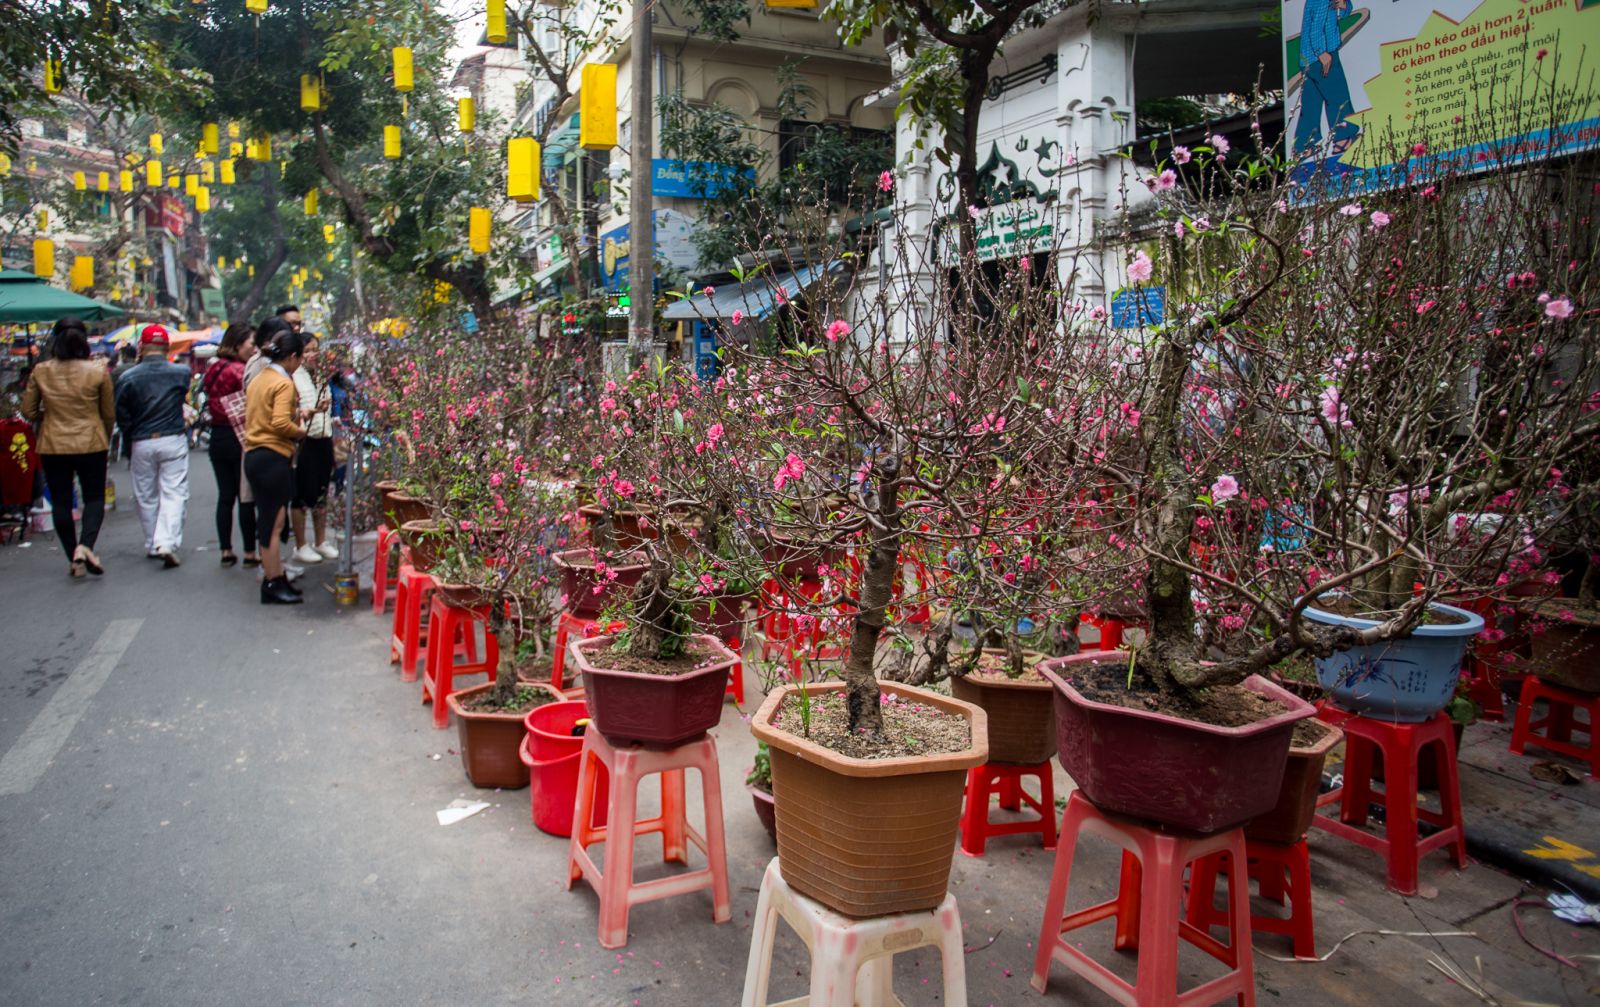 Nhiều năm nay, chợ hoa Hàng Lược chỉ tập trung bán các loại đào quất có độ lớn vừa phải theo nhu cầu của người mua. Rất nhiều người dân đi chợ hoa không chỉ để mua hoa mà còn để tìm lại hương vị Tết Nguyên đán đặc biệt ở phố cổ Hà Nội.